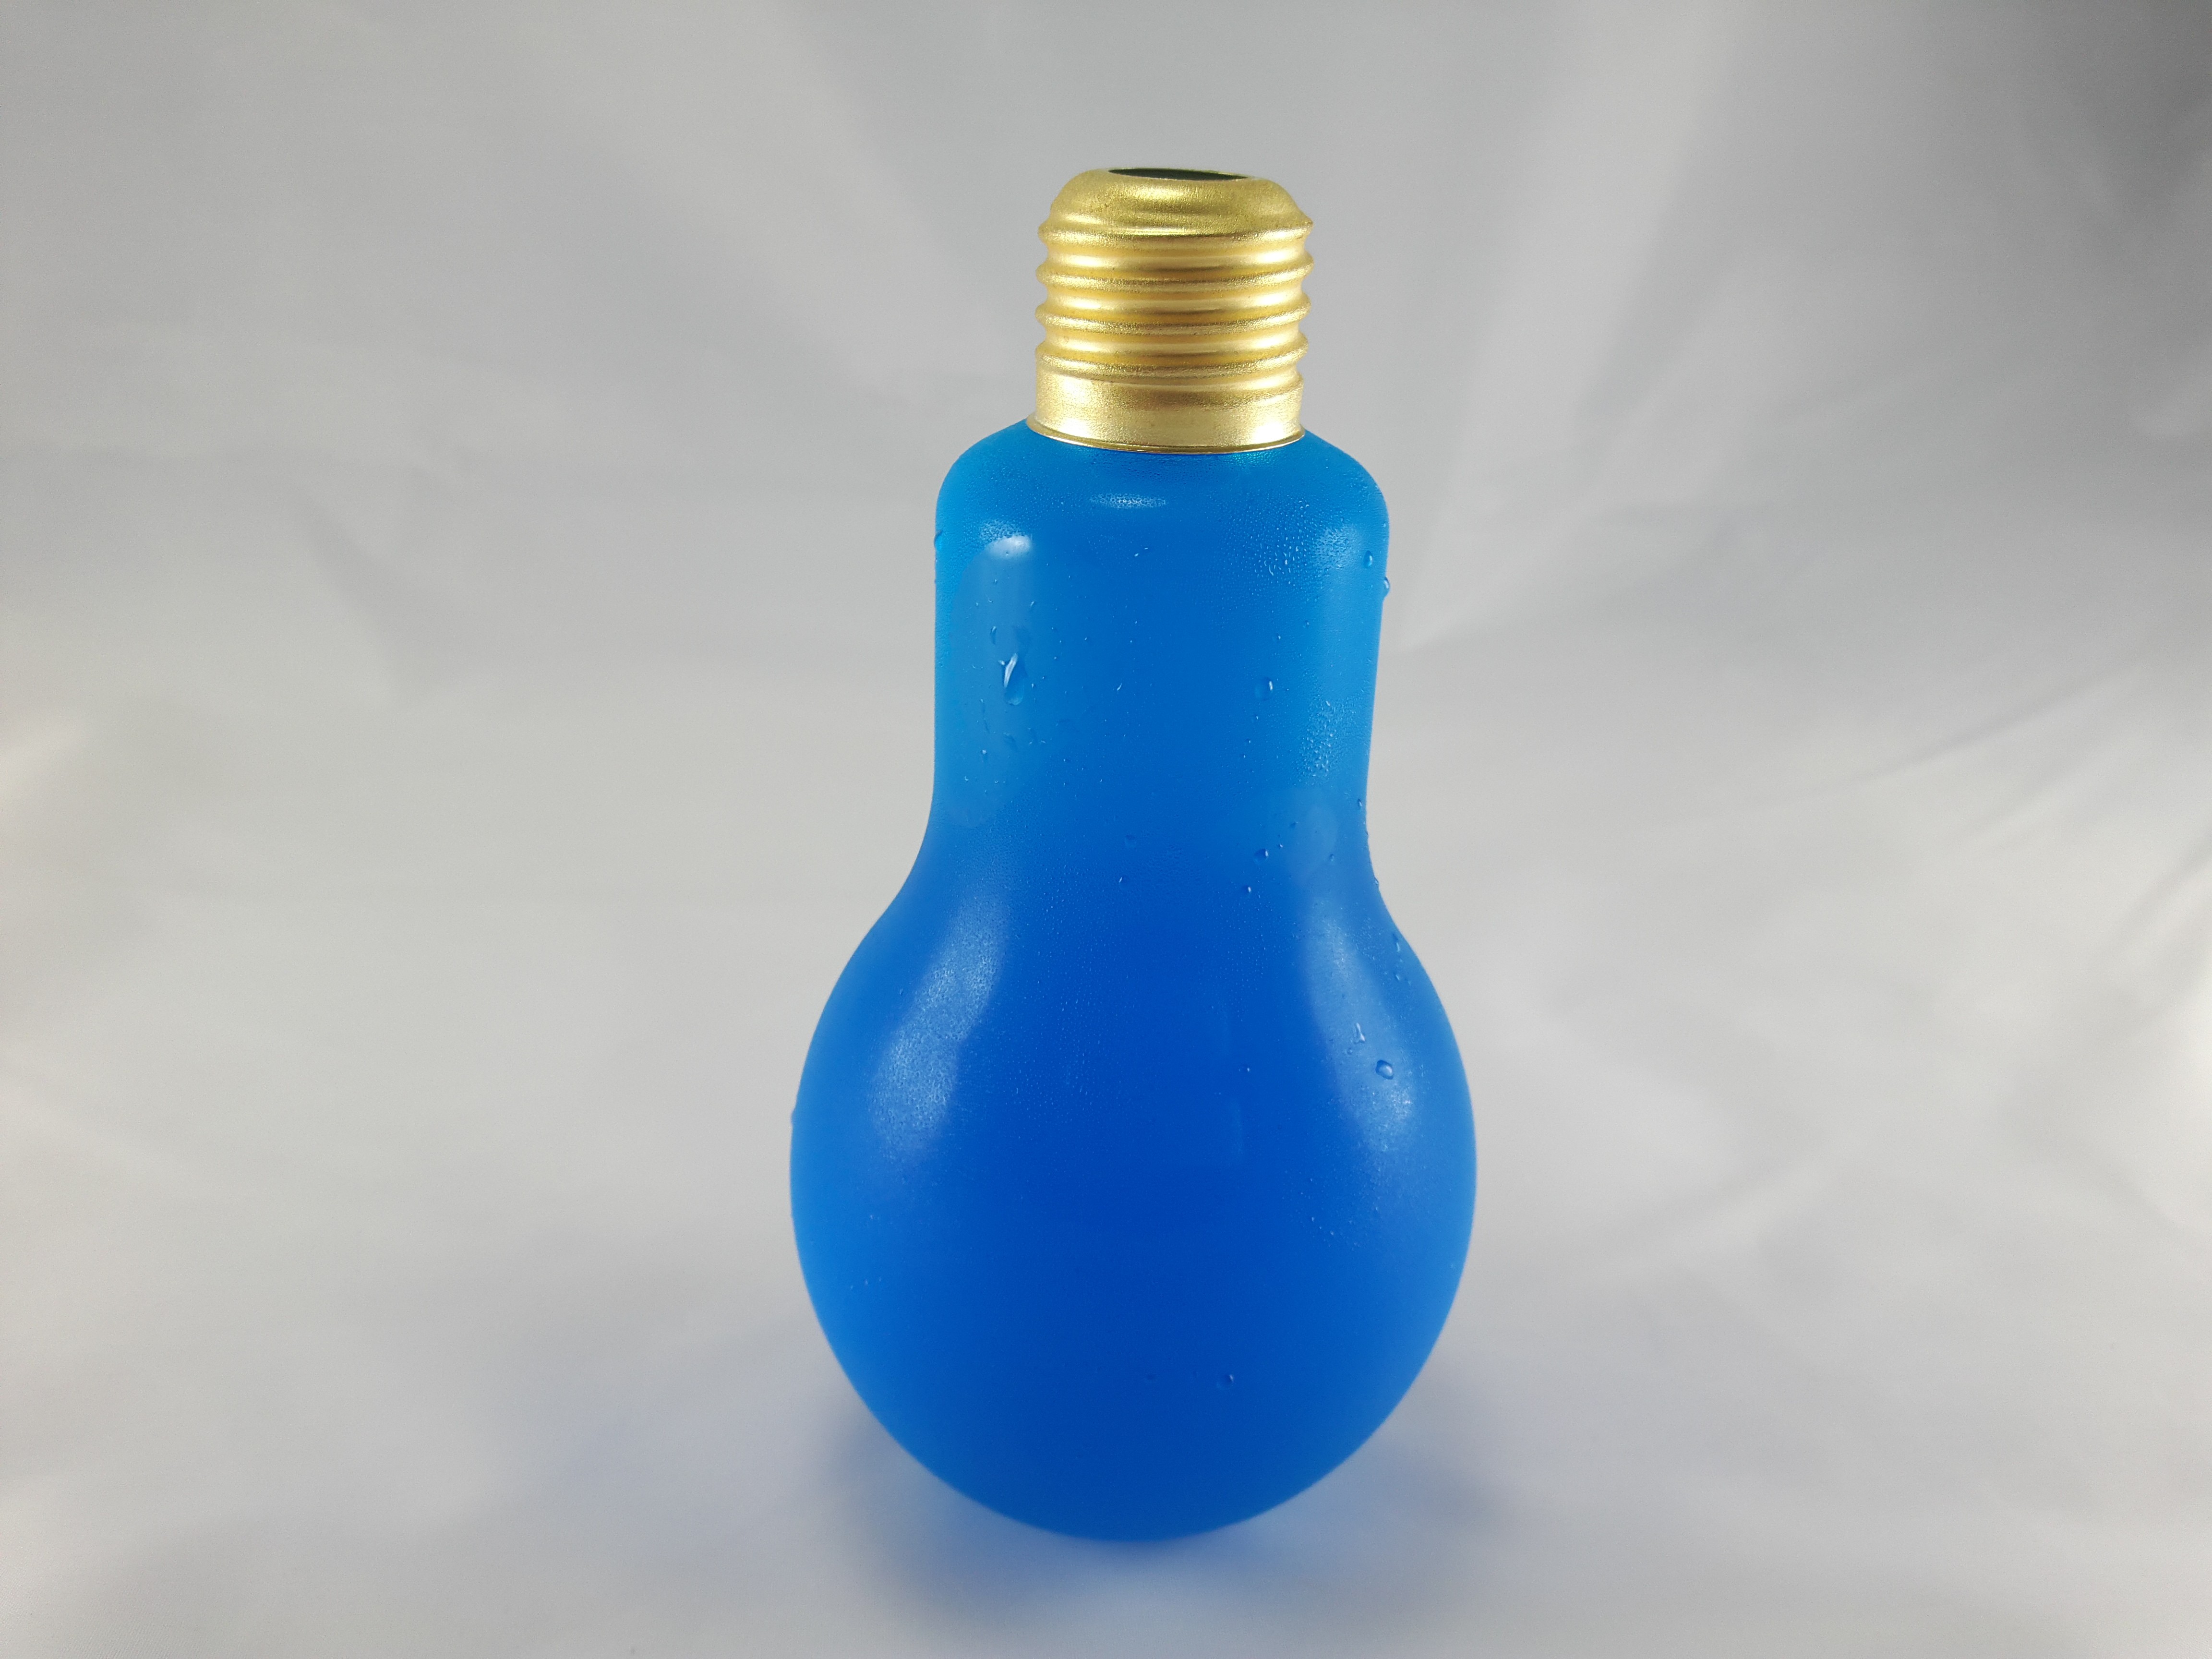 燈泡造型飲品-藍柑葡萄汁(玻璃瓶身310cc)